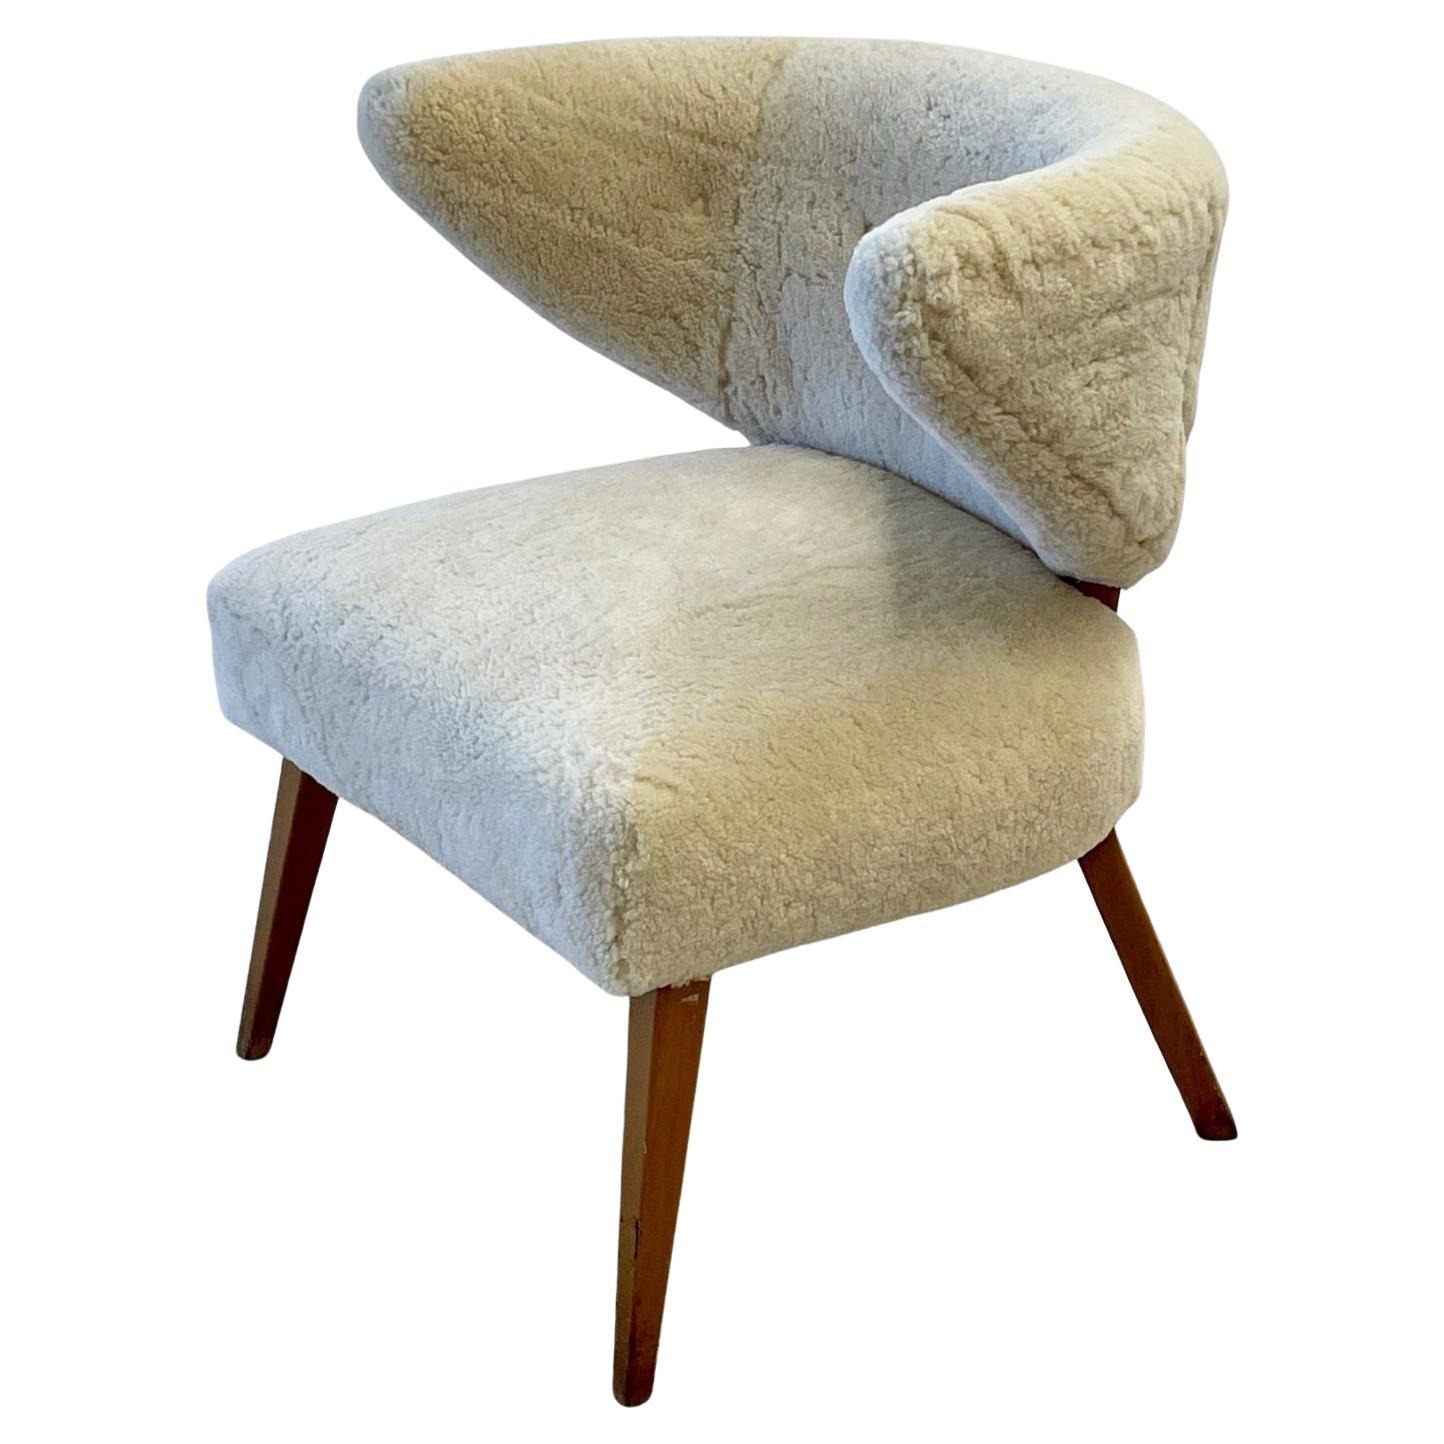 Mid-Century Modern Wing / Slipper Chair, Otto Schultz Style, Sheepskin